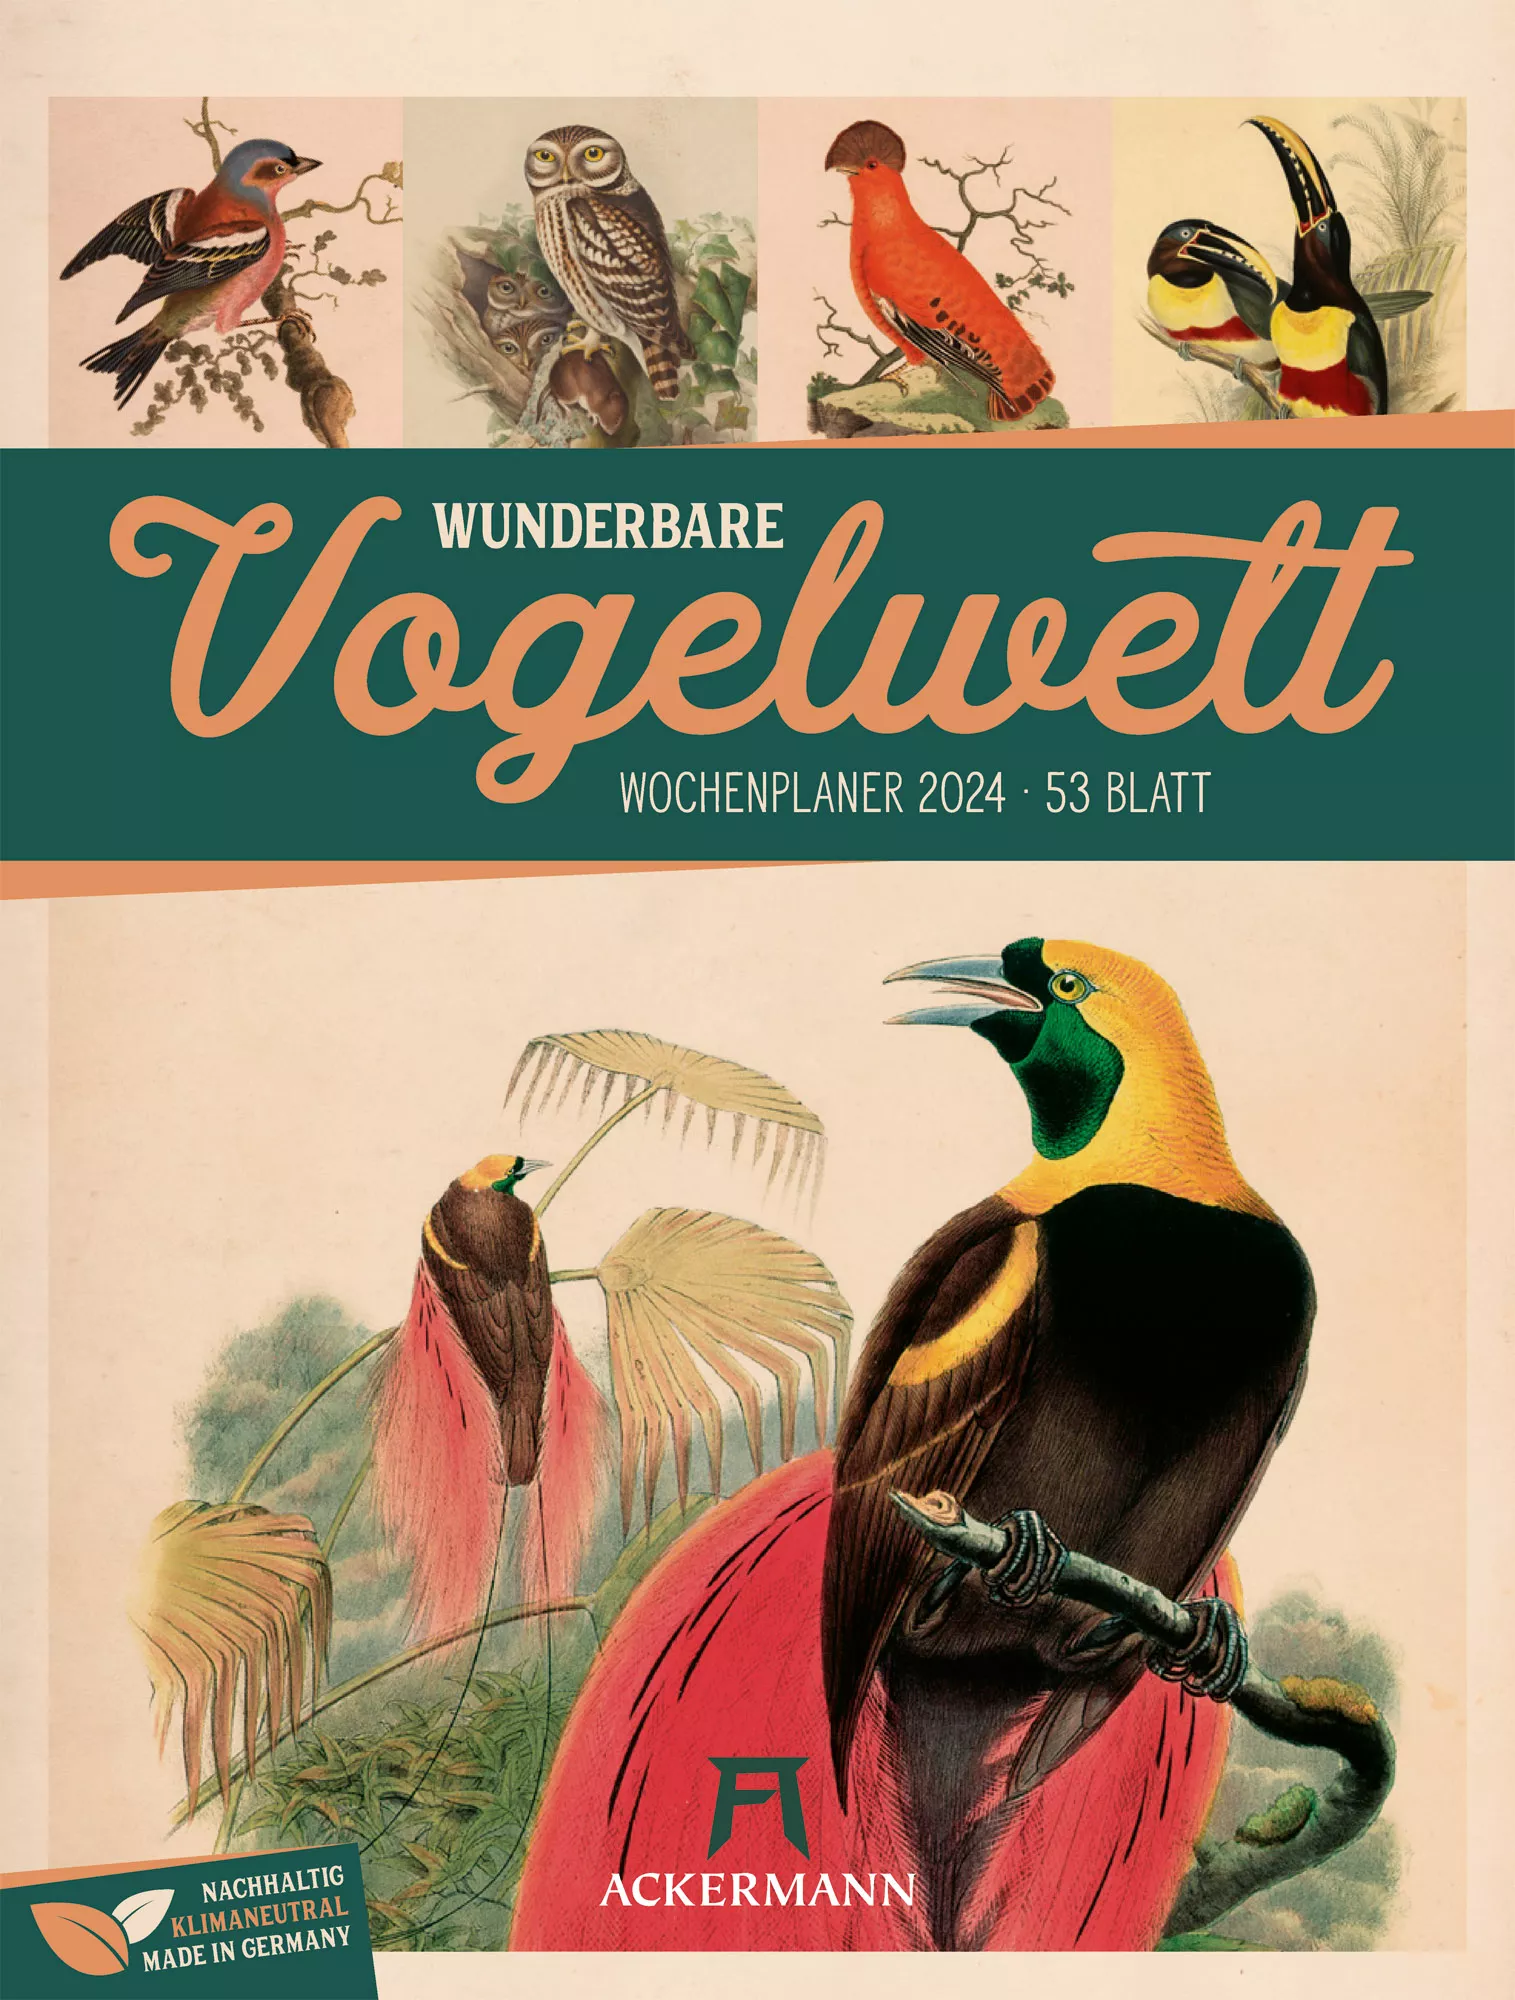 Ackermann Kalender Wunderbare Vogelwelt - Wochenplaner 2024 - Titelblatt